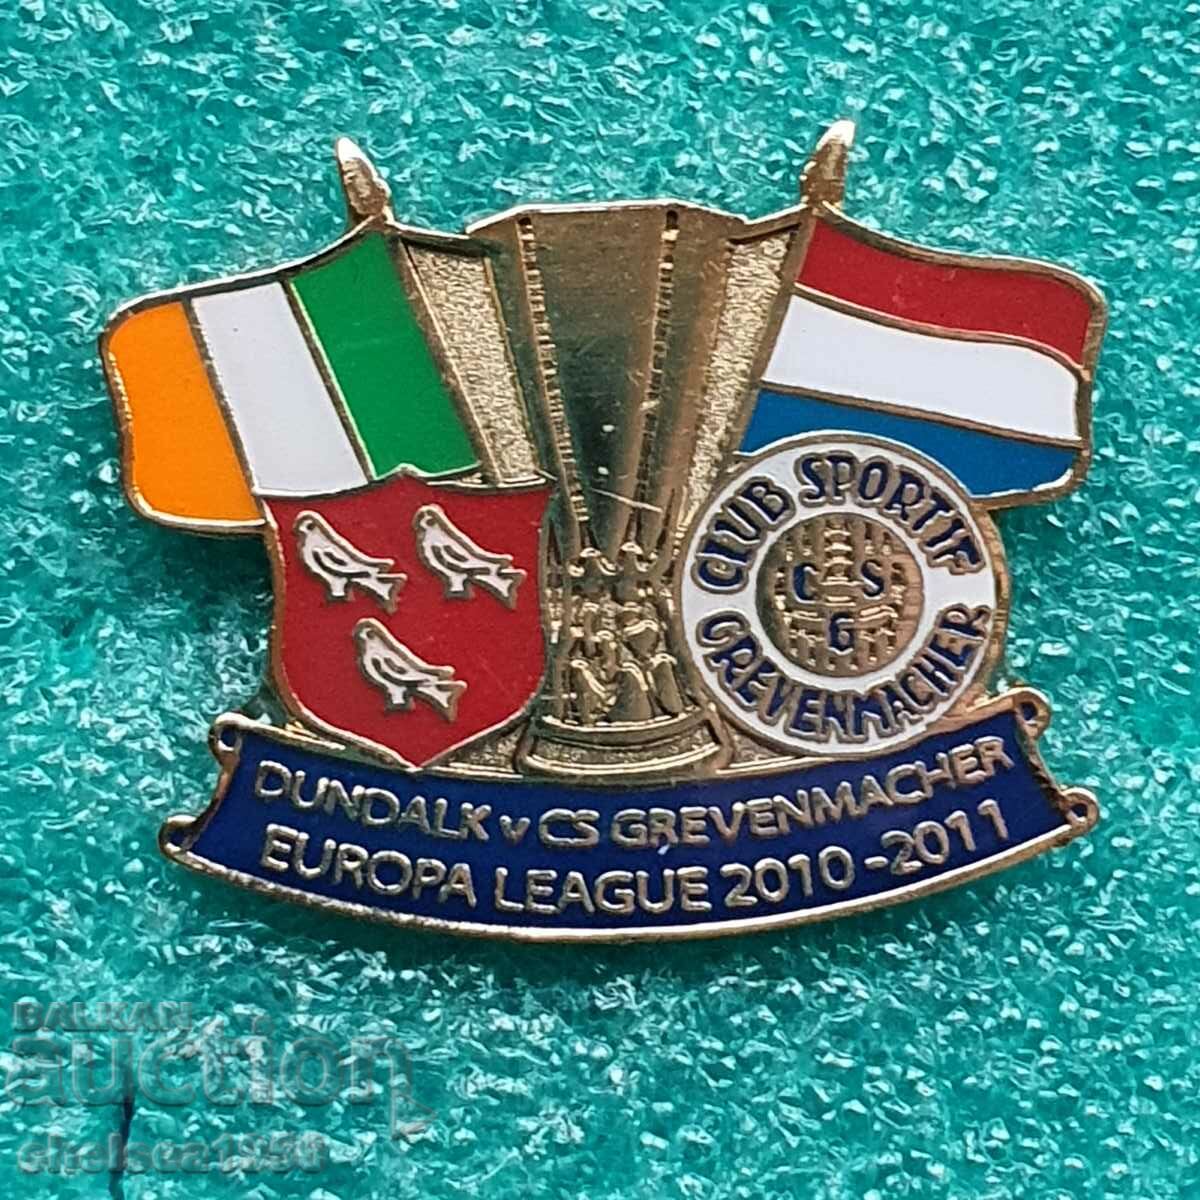 Europa League badge Dundalk - Grevenmacher 2010-2011